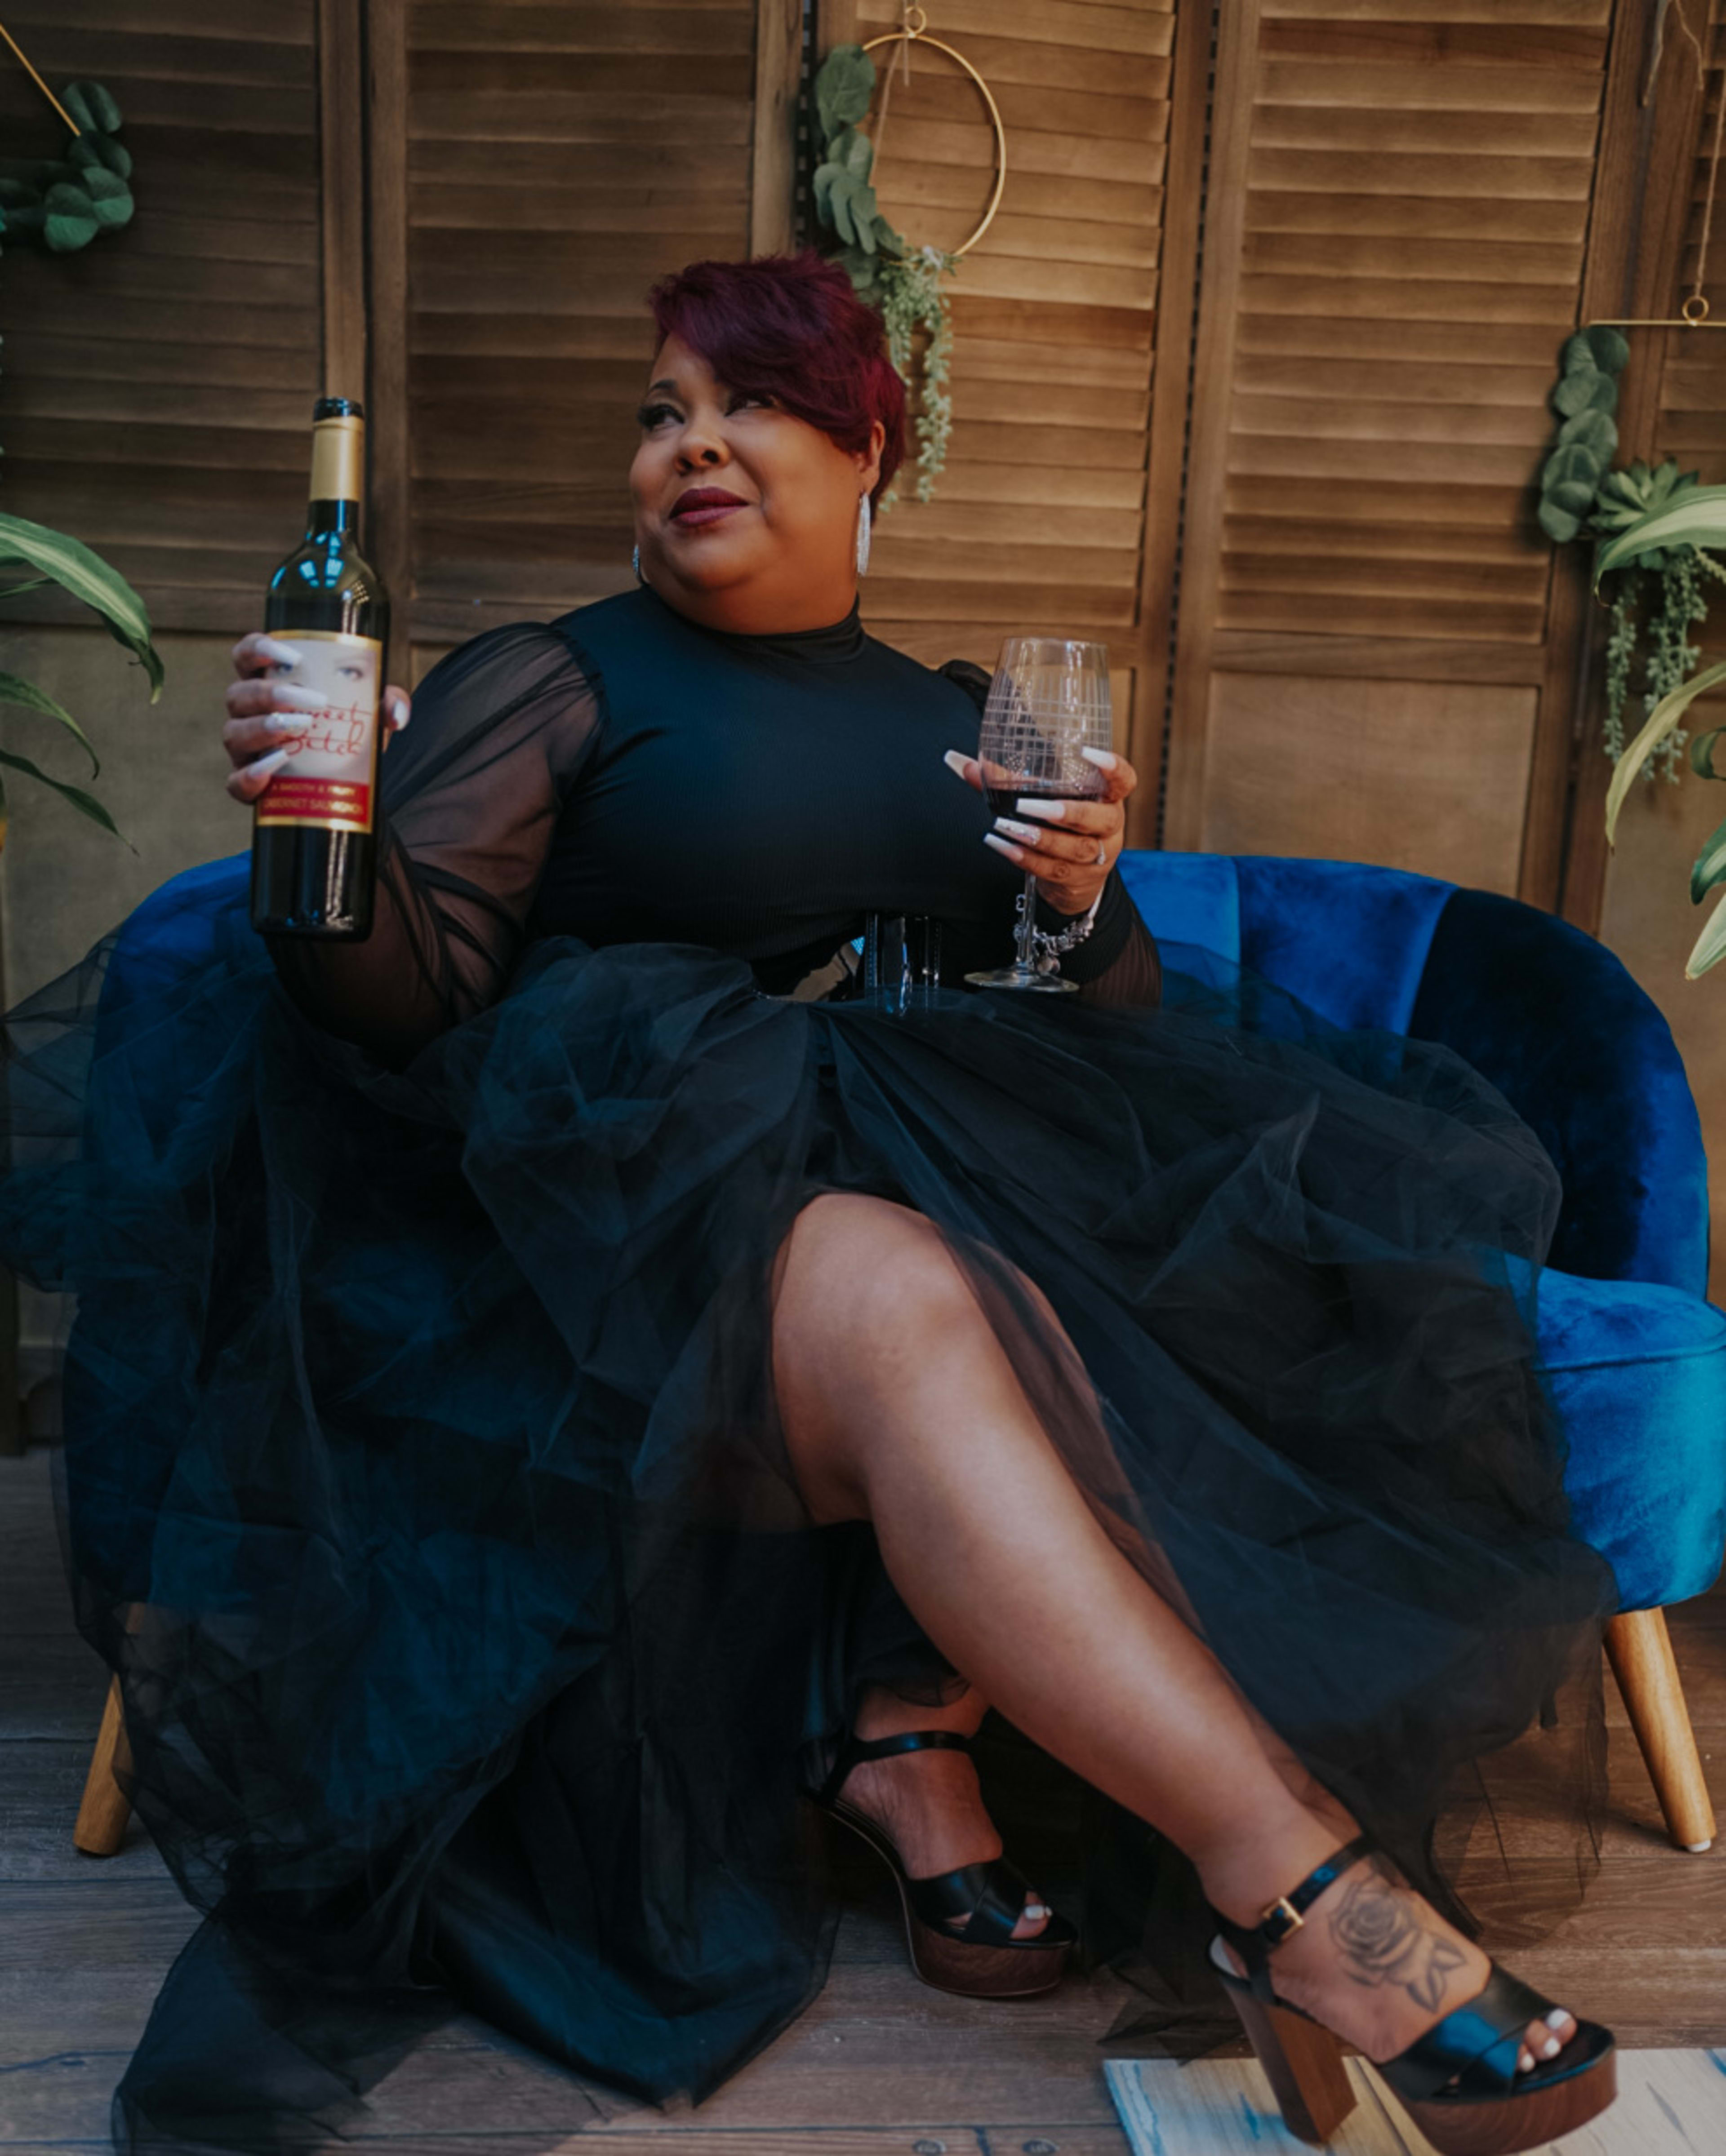 Femme tenant une bouteille de vin assise sur une chaise bleue pendant un shooting photo.